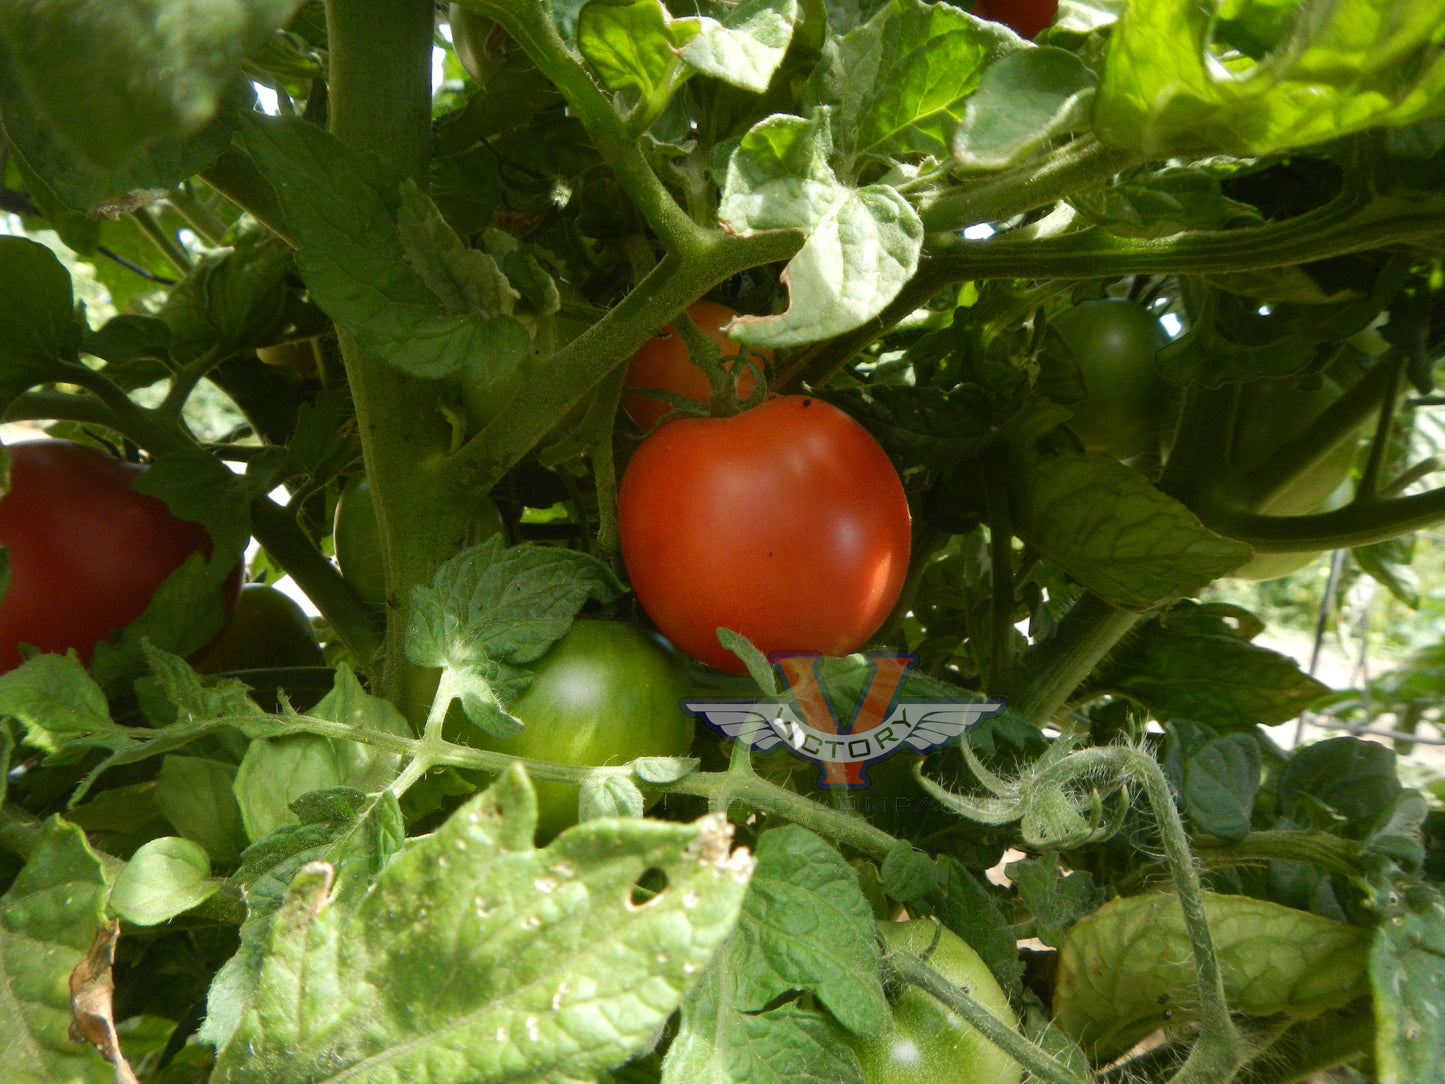 Dwarf Flashy Ace Tomato